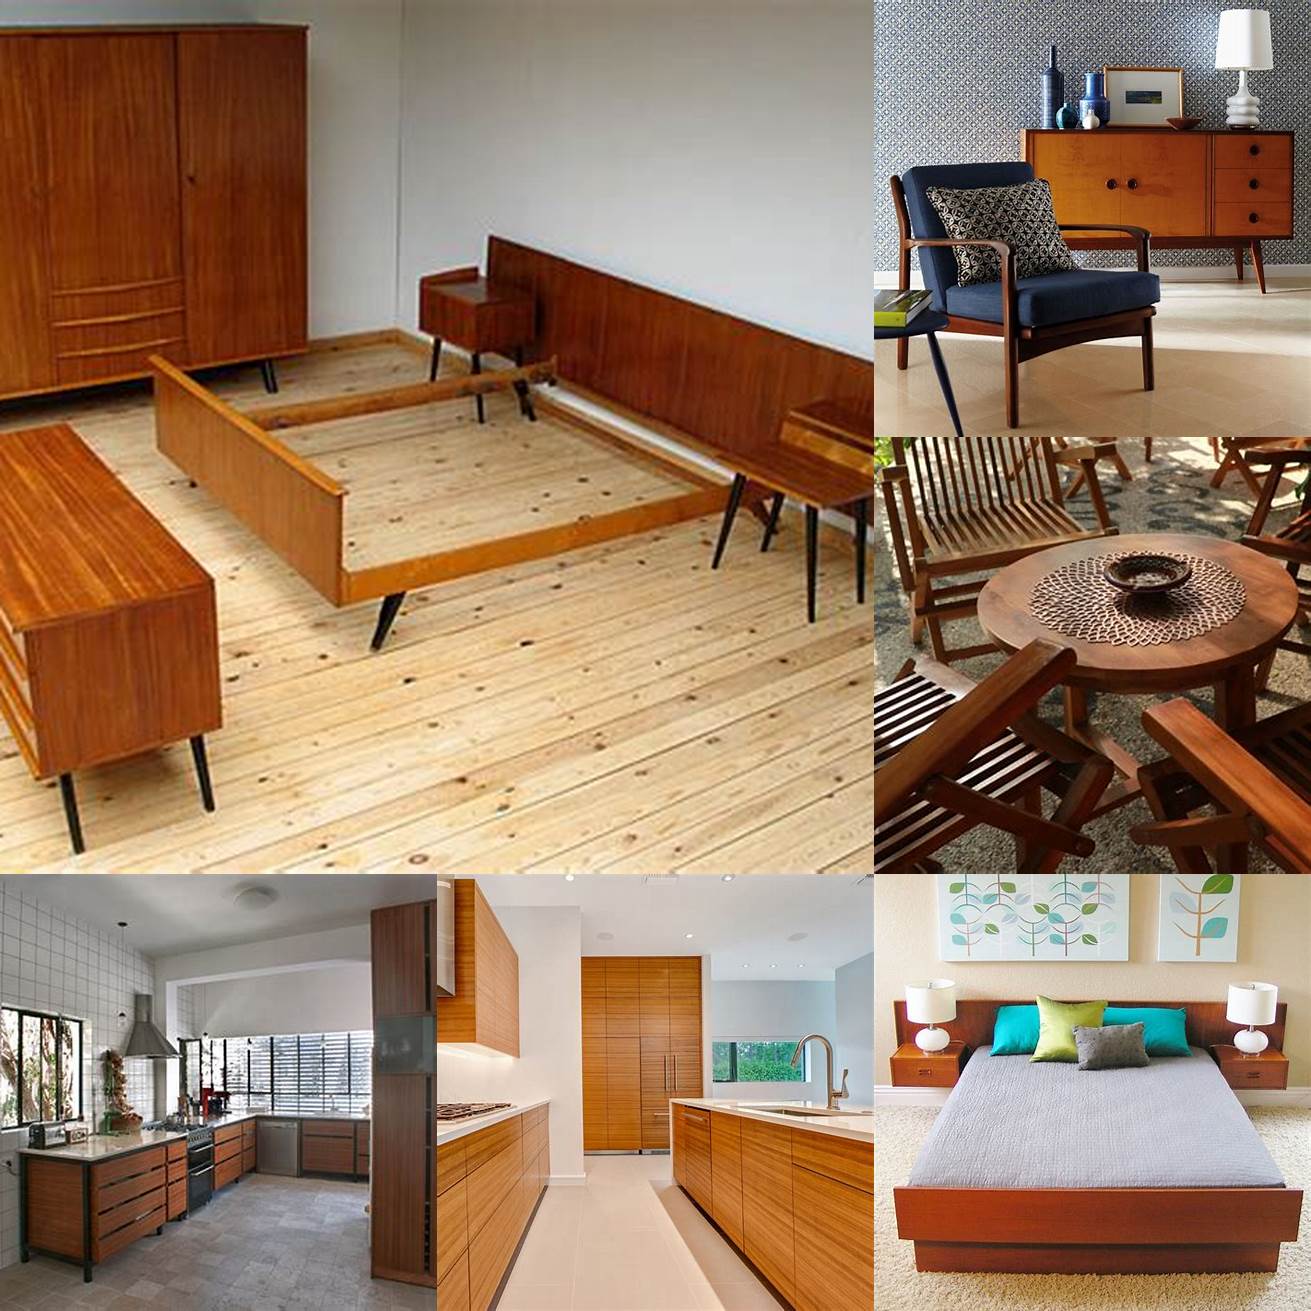 Using Teak Wood Furniture in Interior Design